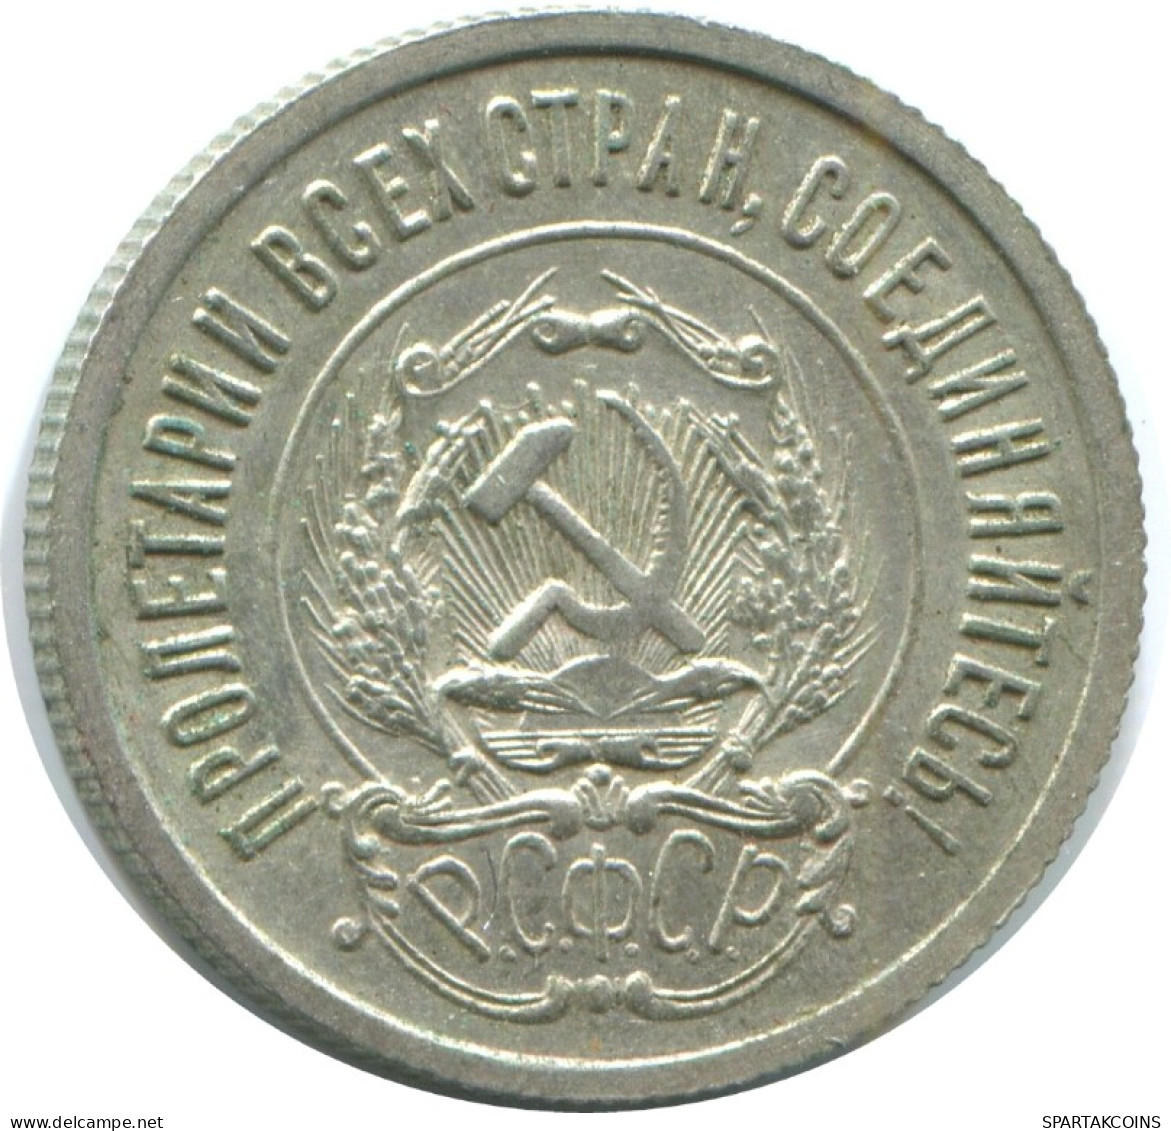 20 KOPEKS 1923 RUSSIA RSFSR SILVER Coin HIGH GRADE #AF591.4.U.A - Russland